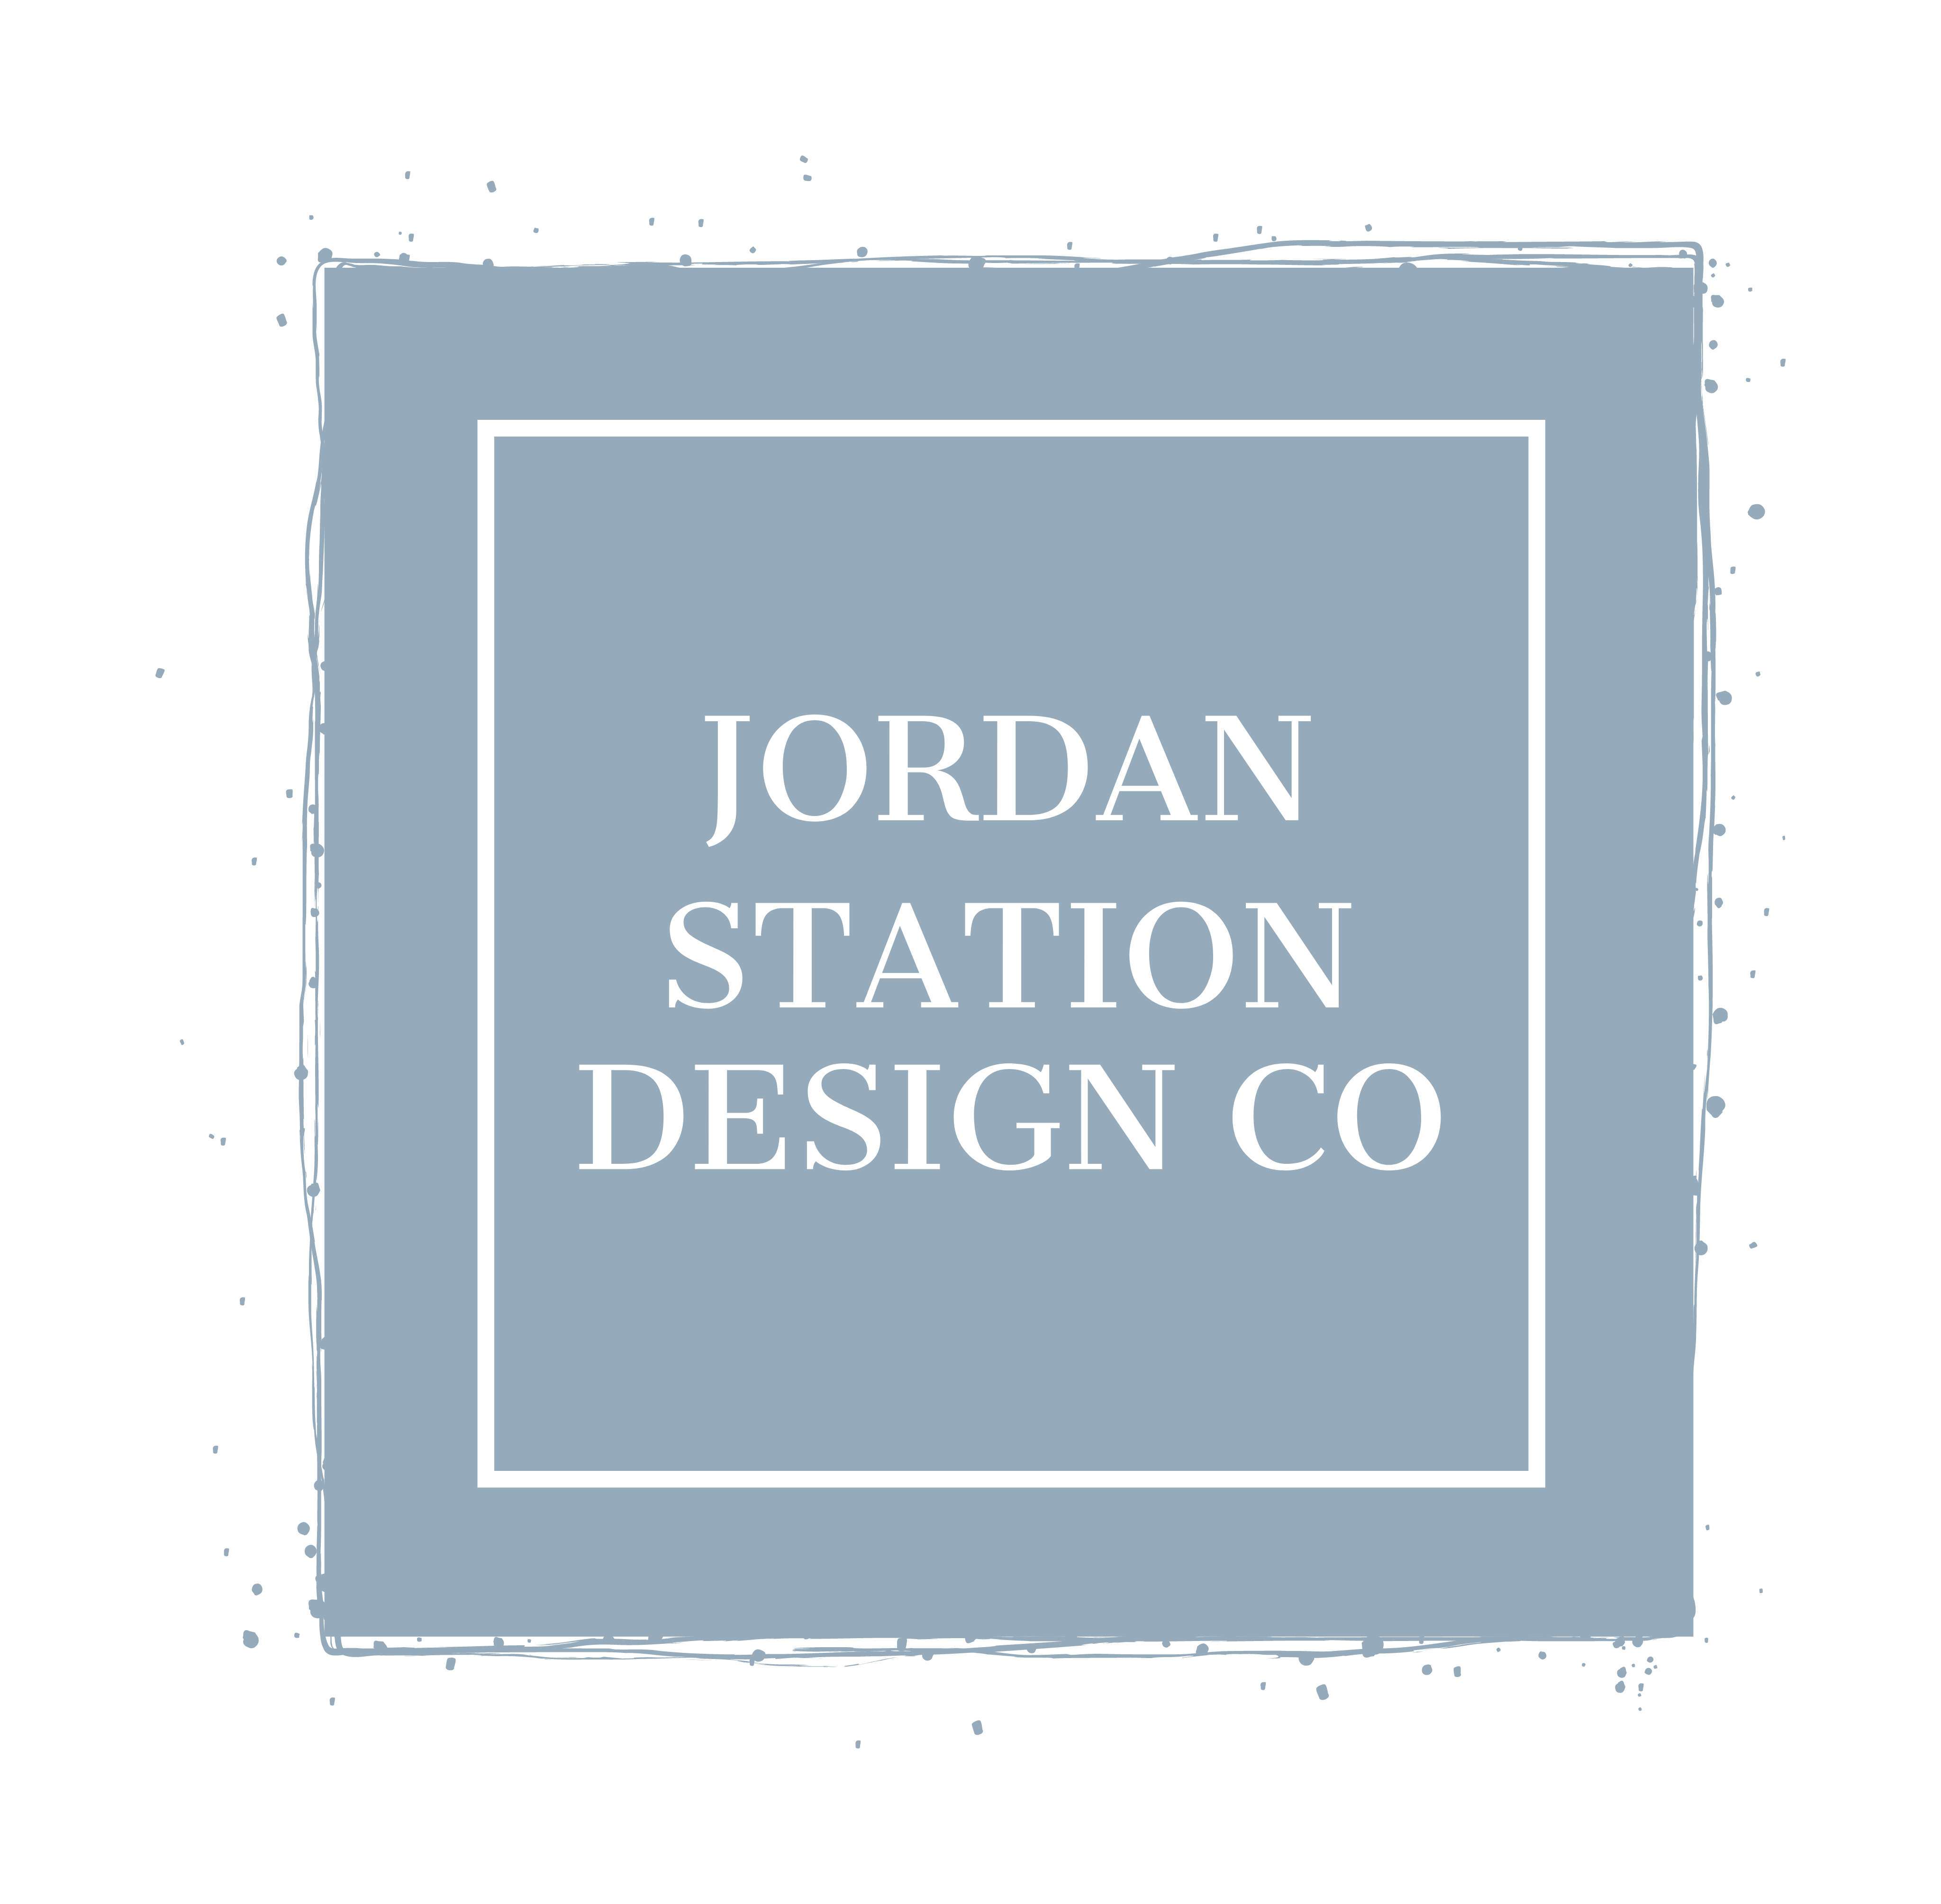 Jordan Station Design Co.